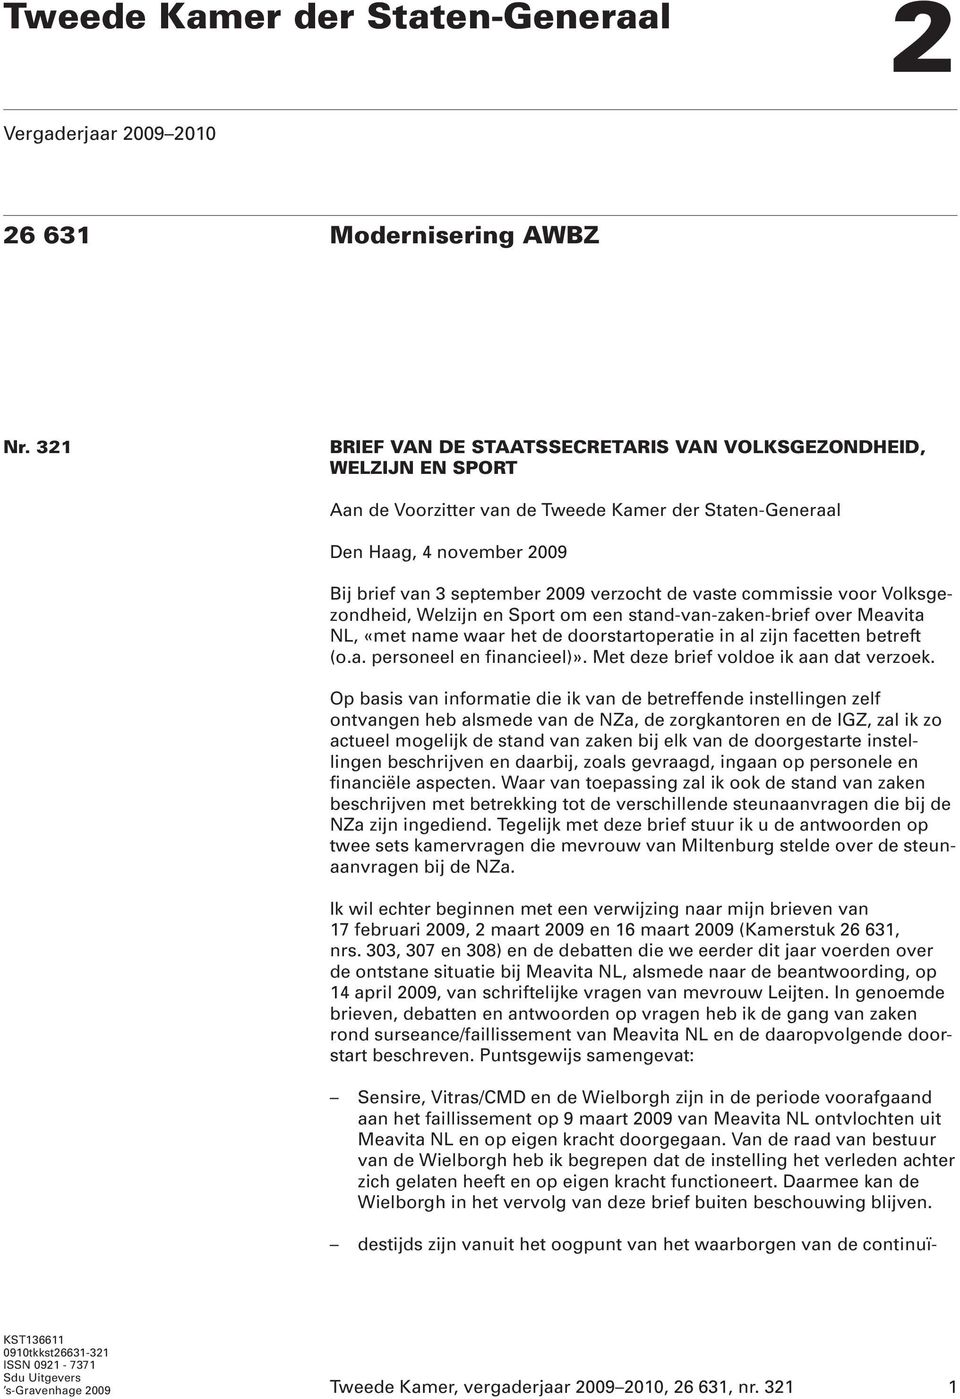 vaste commissie voor Volksgezondheid, Welzijn en Sport om een stand-van-zaken-brief over Meavita NL, «met name waar het de doorstartoperatie in al zijn facetten betreft (o.a. personeel en financieel)».